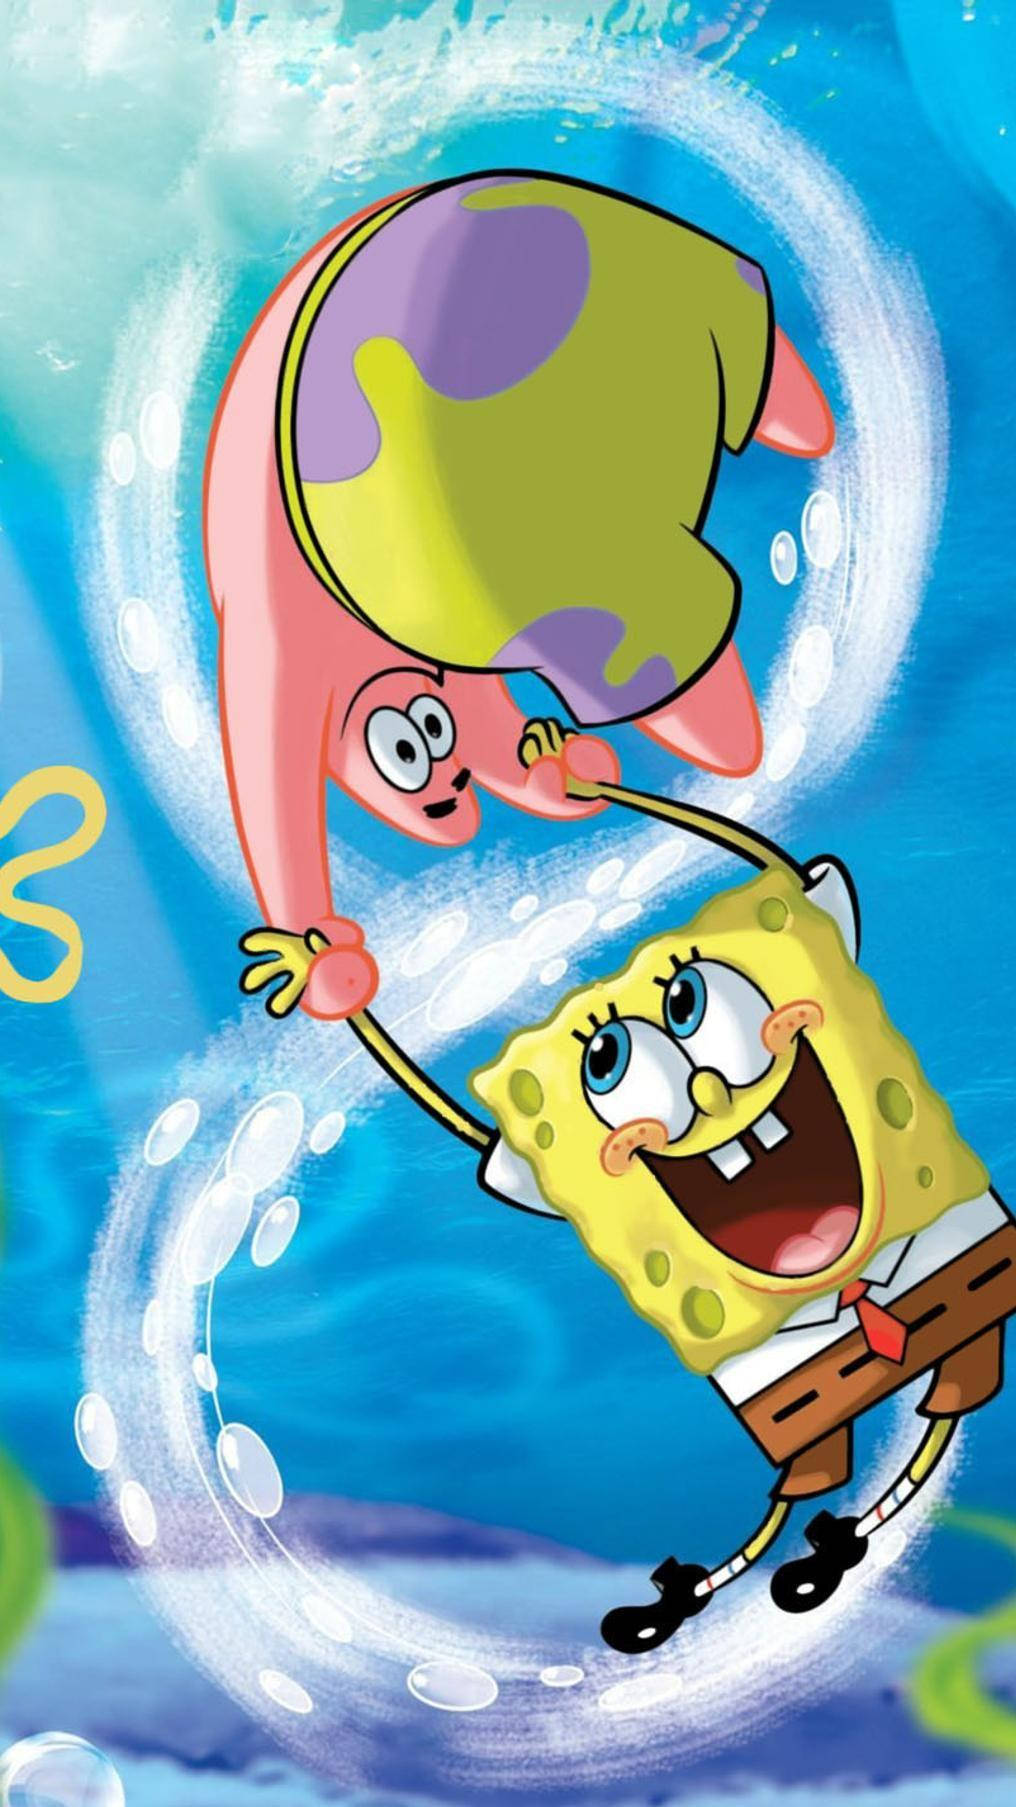 Spongebob And Patrick In The Air Wallpaper